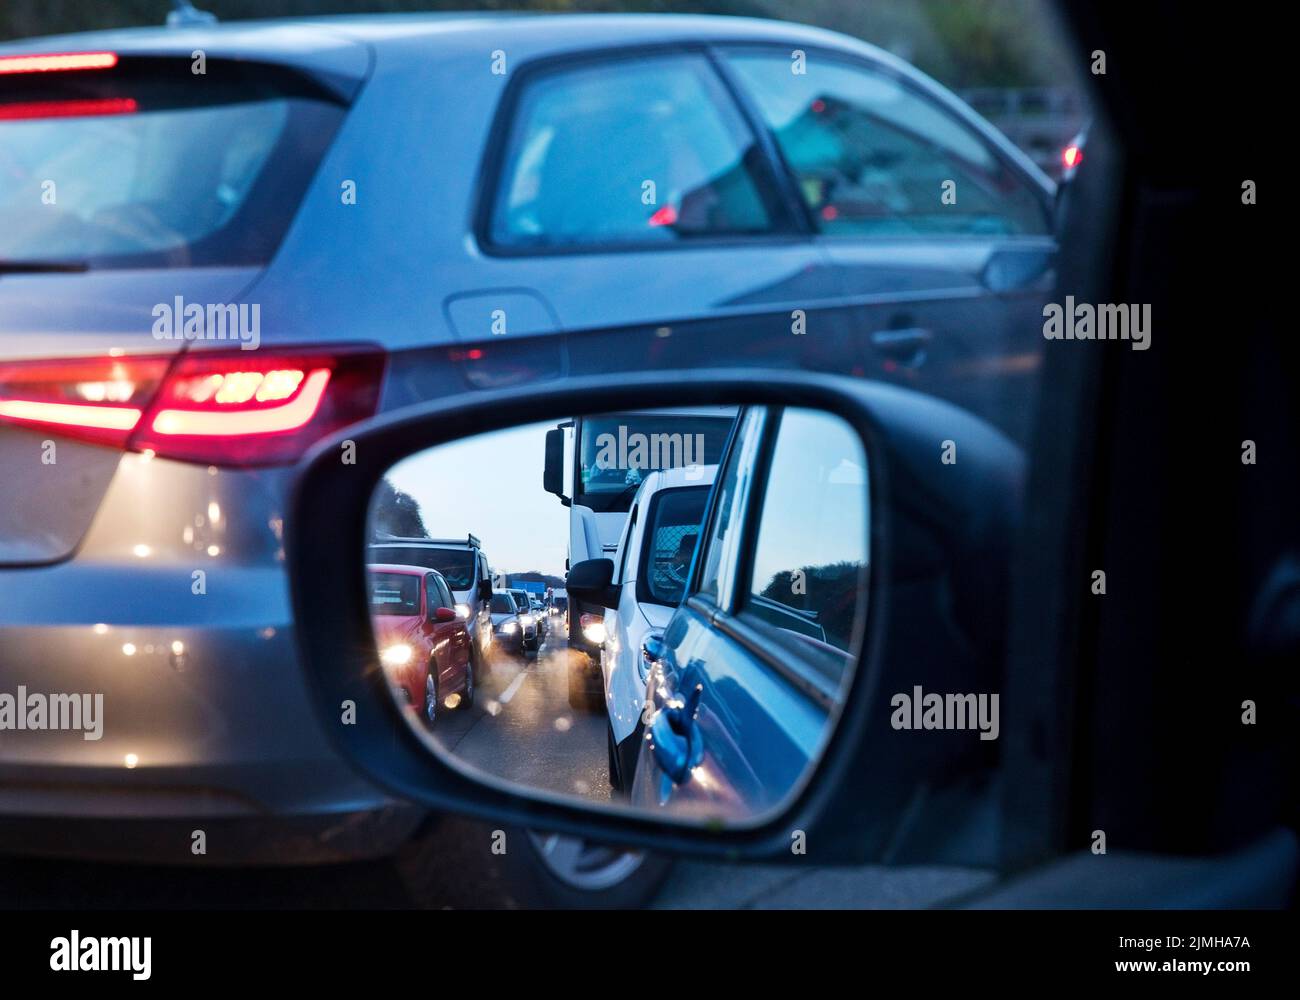 Fermeture complète sur l'autoroute A1, vue de la voiture dans le rétroviseur, Wuppertal, Allemagne Banque D'Images